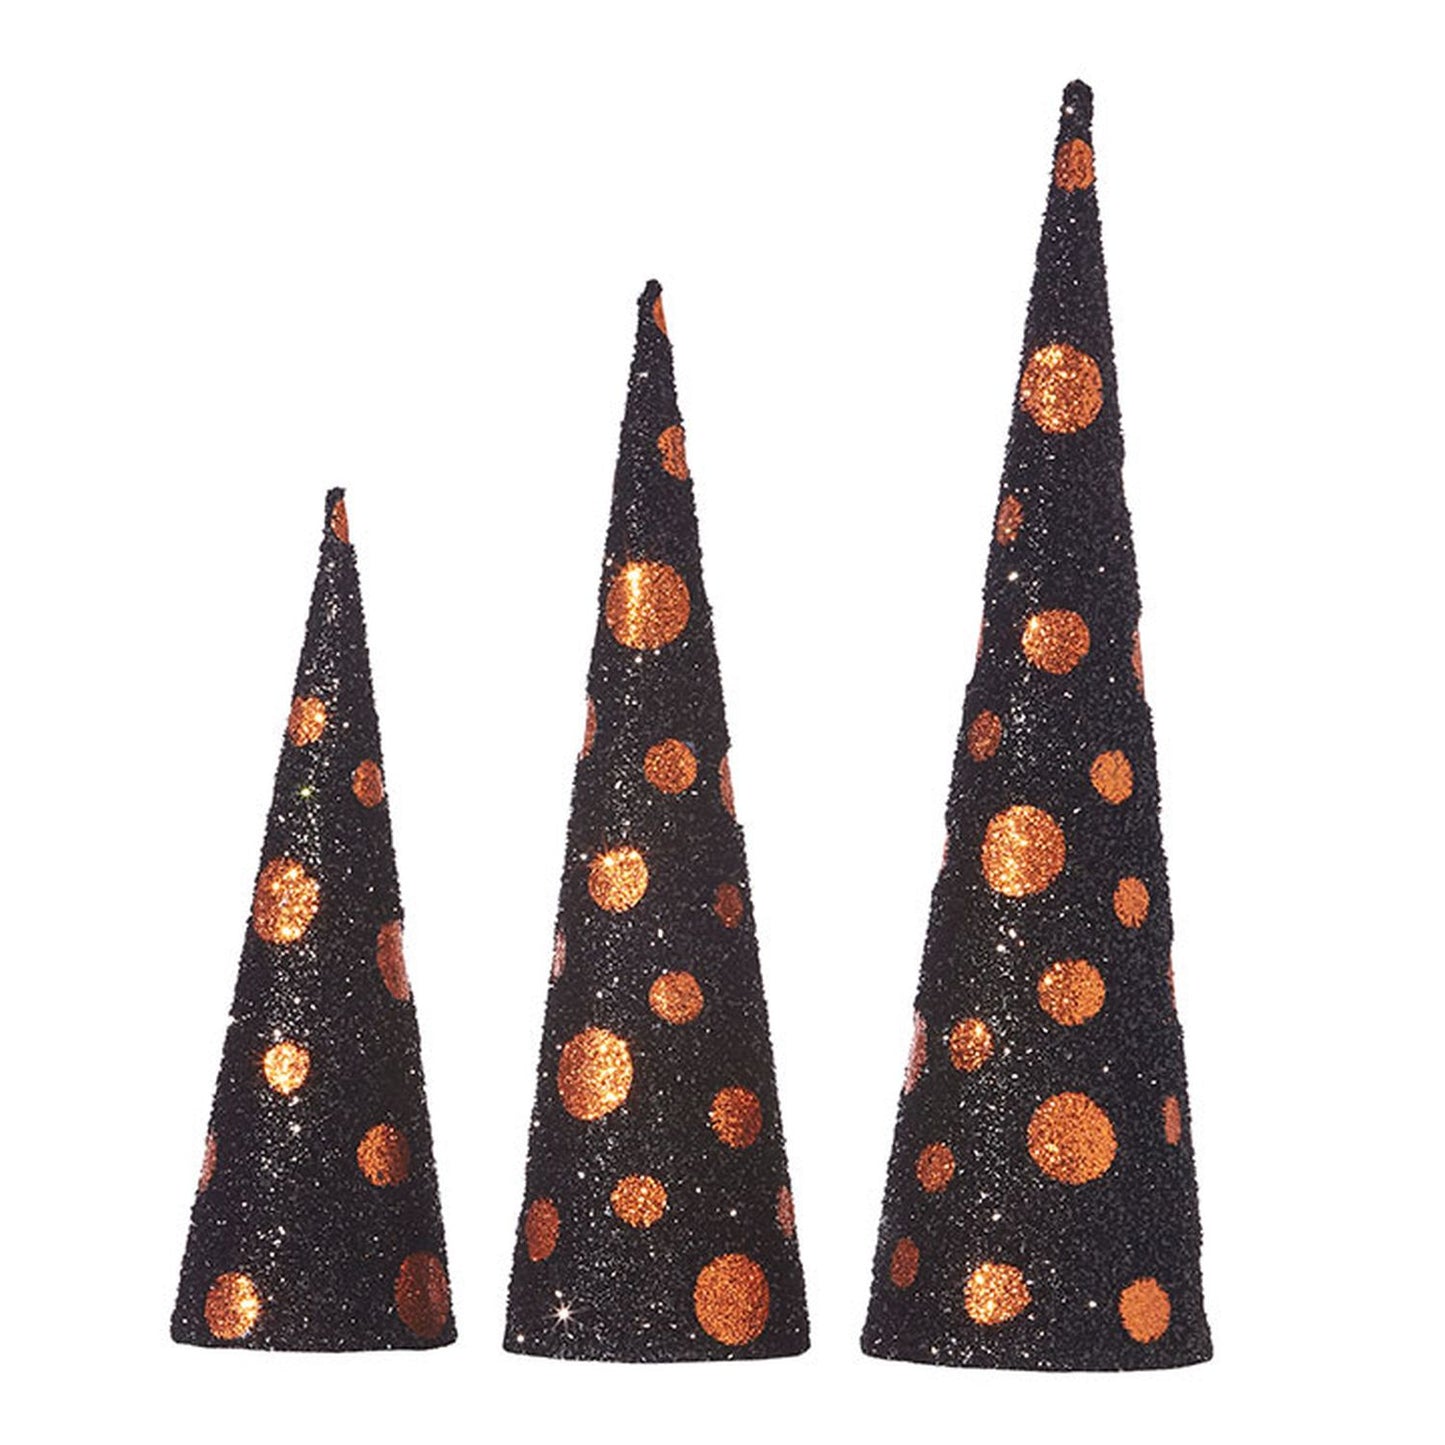 Raz Imports Halloween Party 23.75" Polka Dot Cone Tree, Set of 3